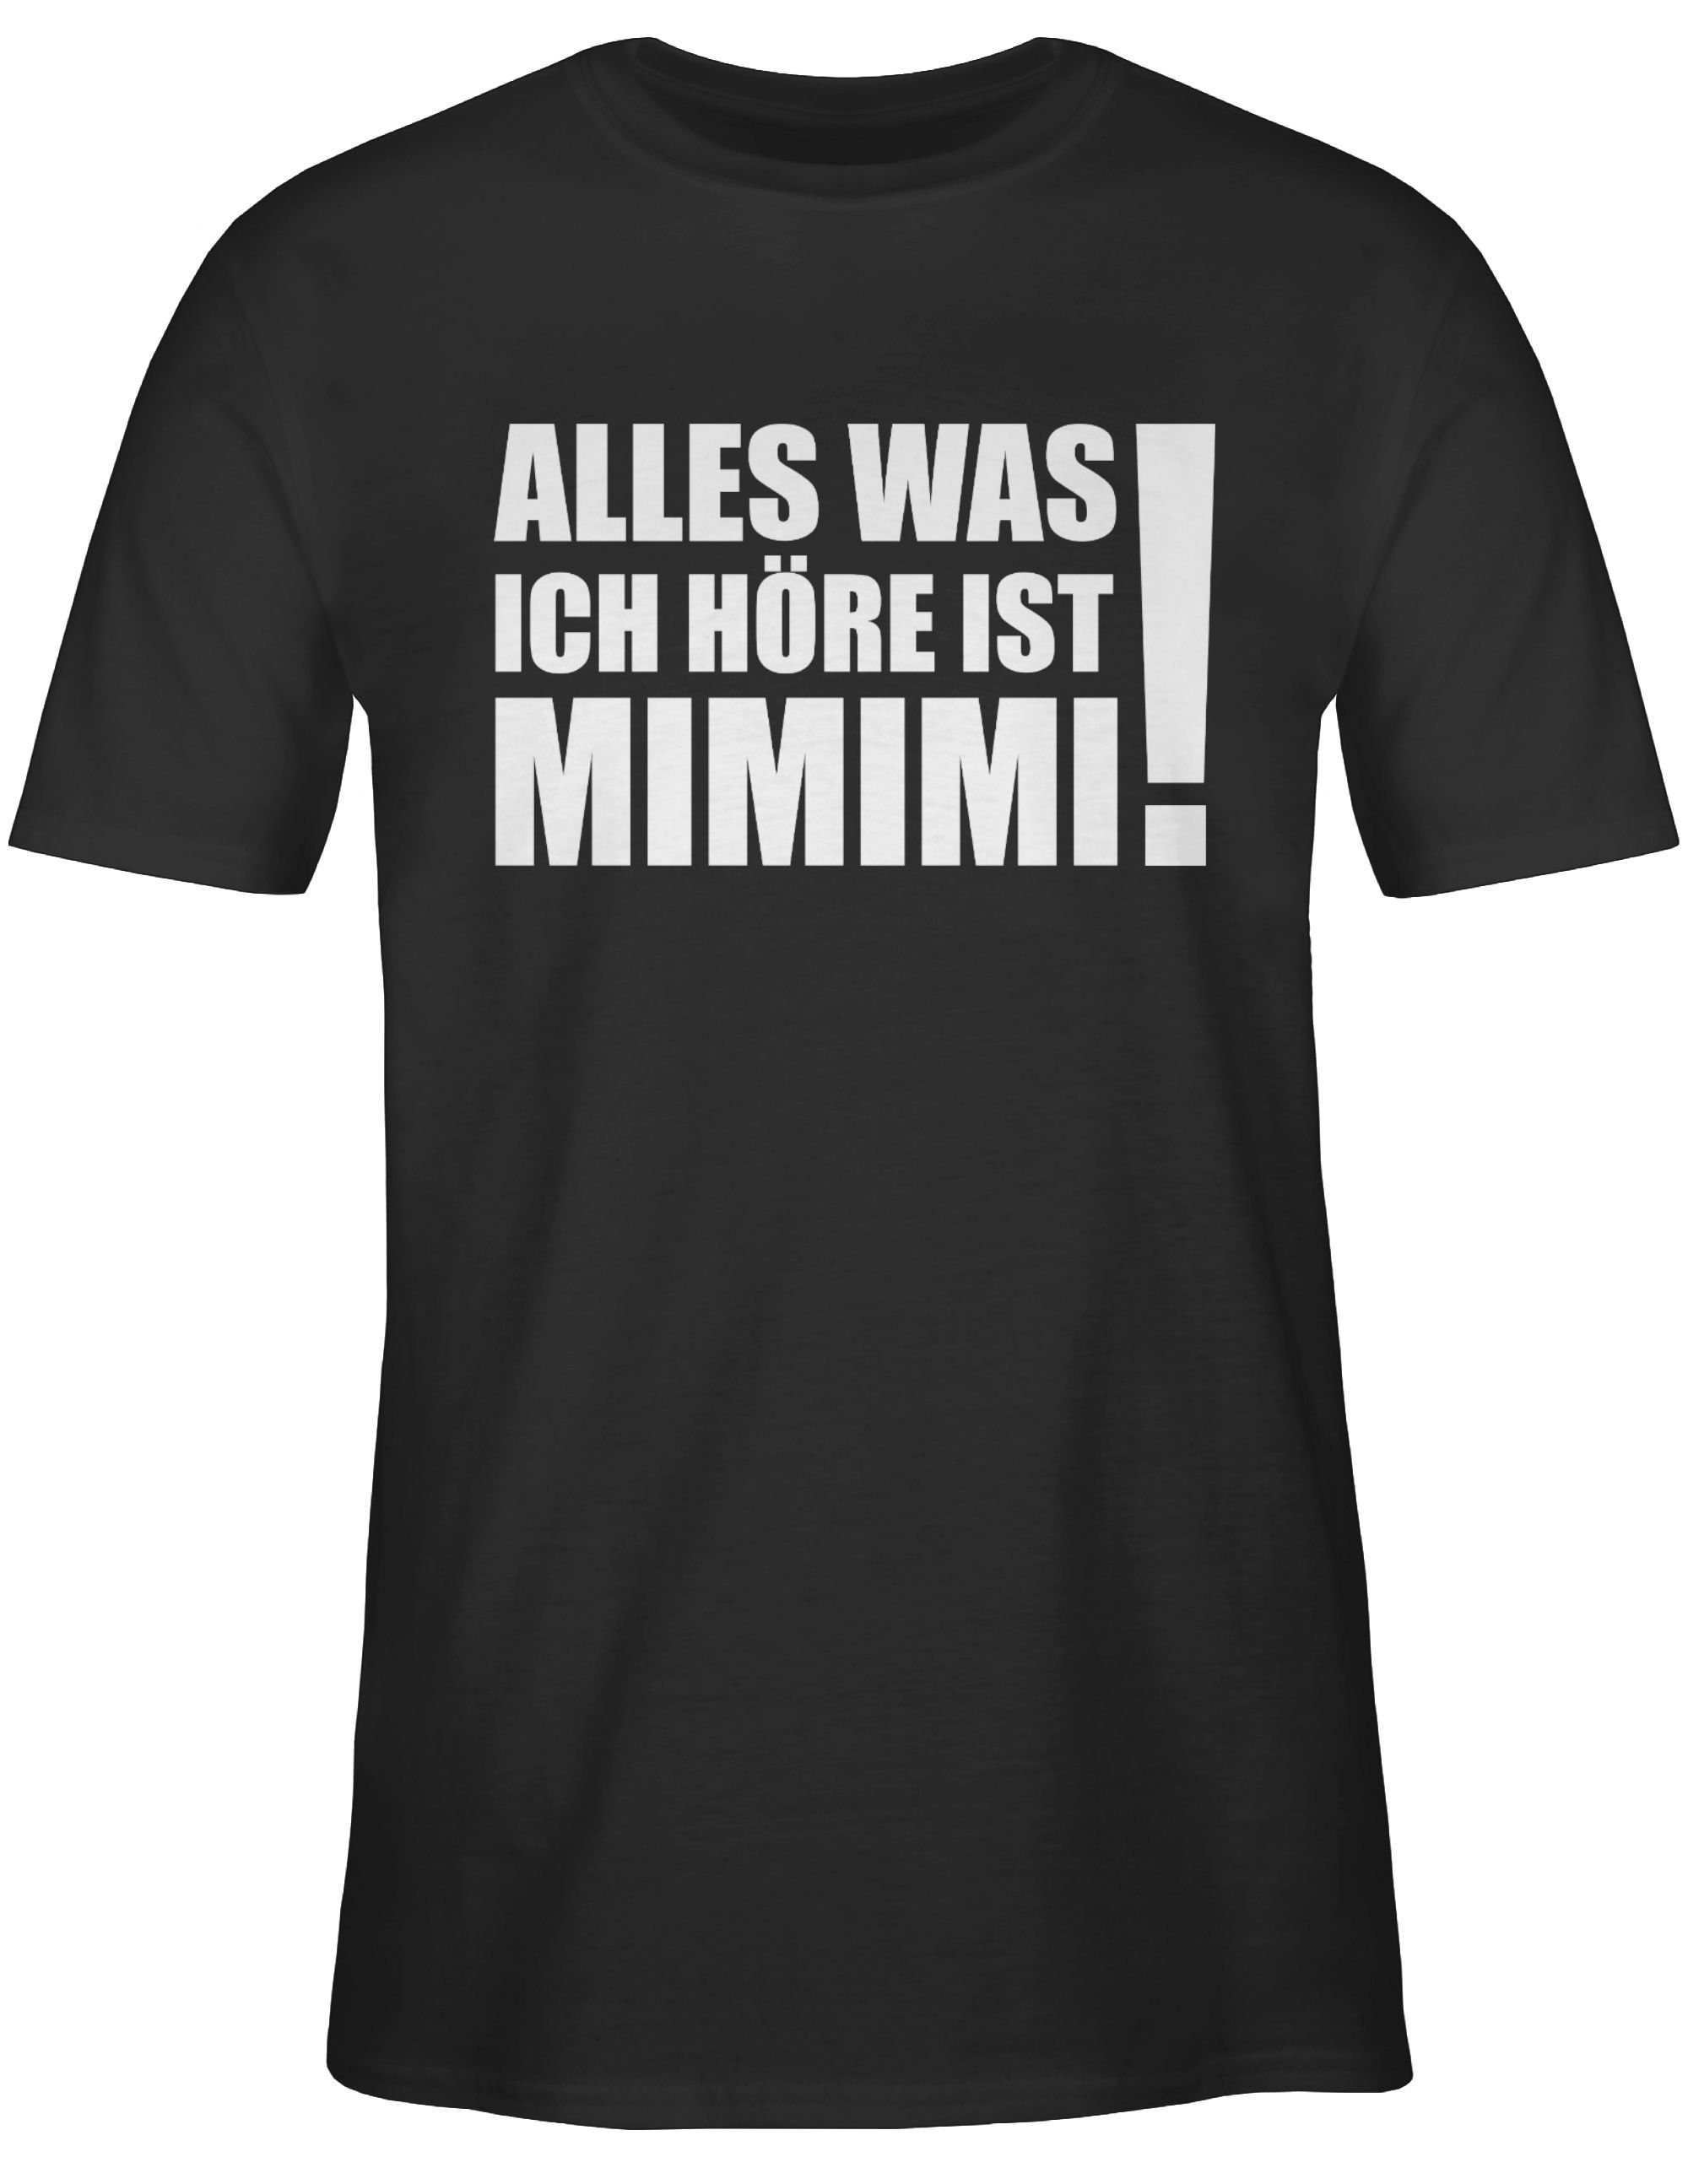 Shirtracer T-Shirt Alles was ich Schwarz ist Statement weiß Spruch Sprüche 1 - höre mit MIMIMI